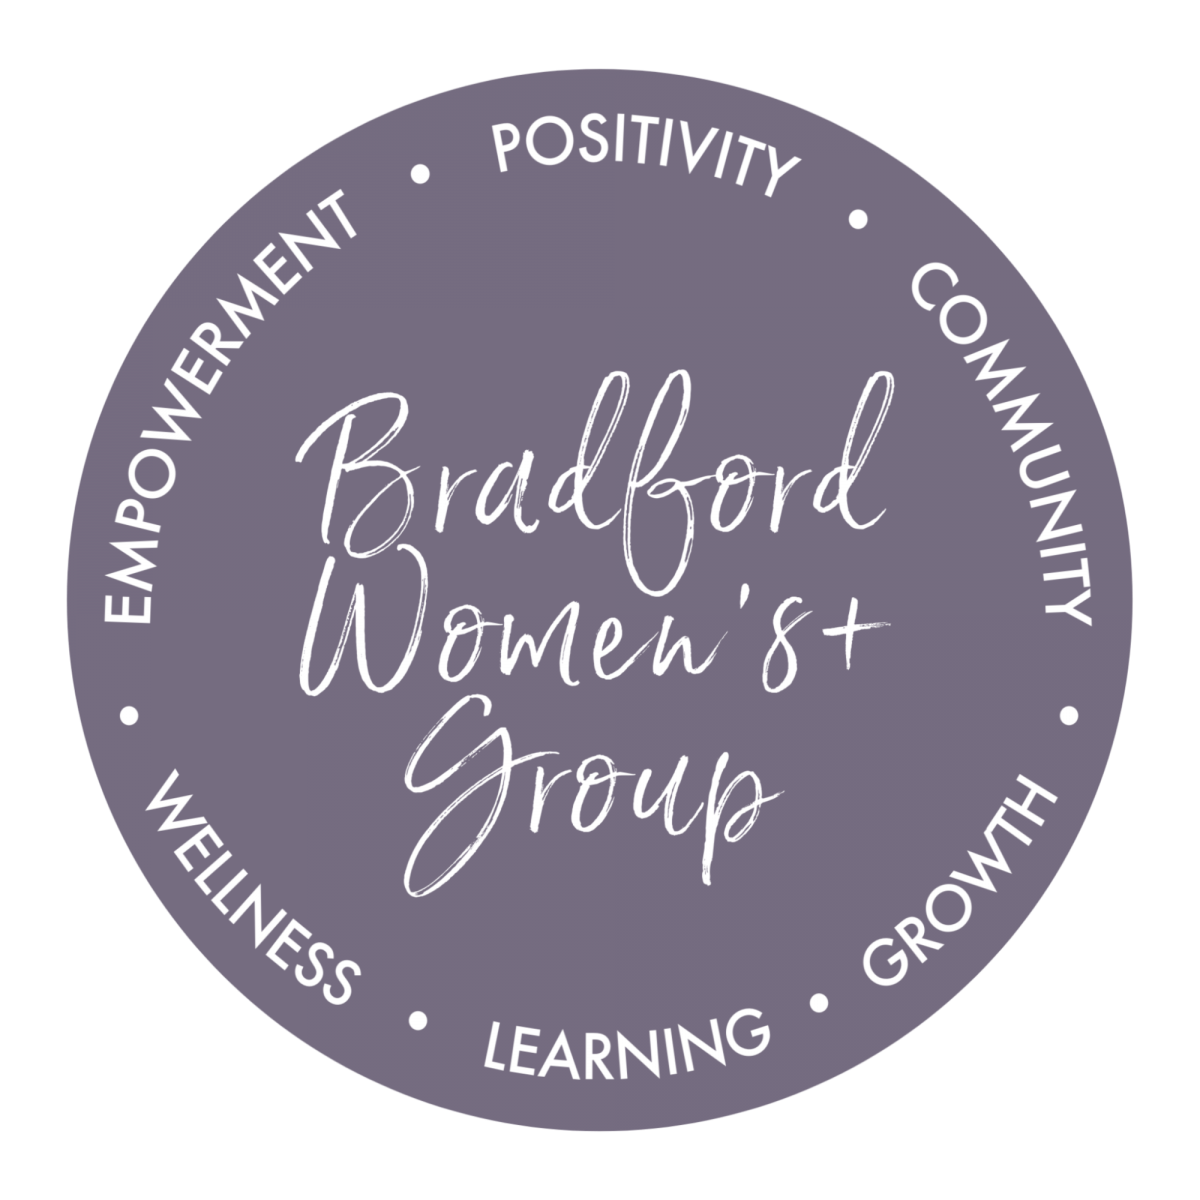 Logo of the Bradford WOmen's + Group